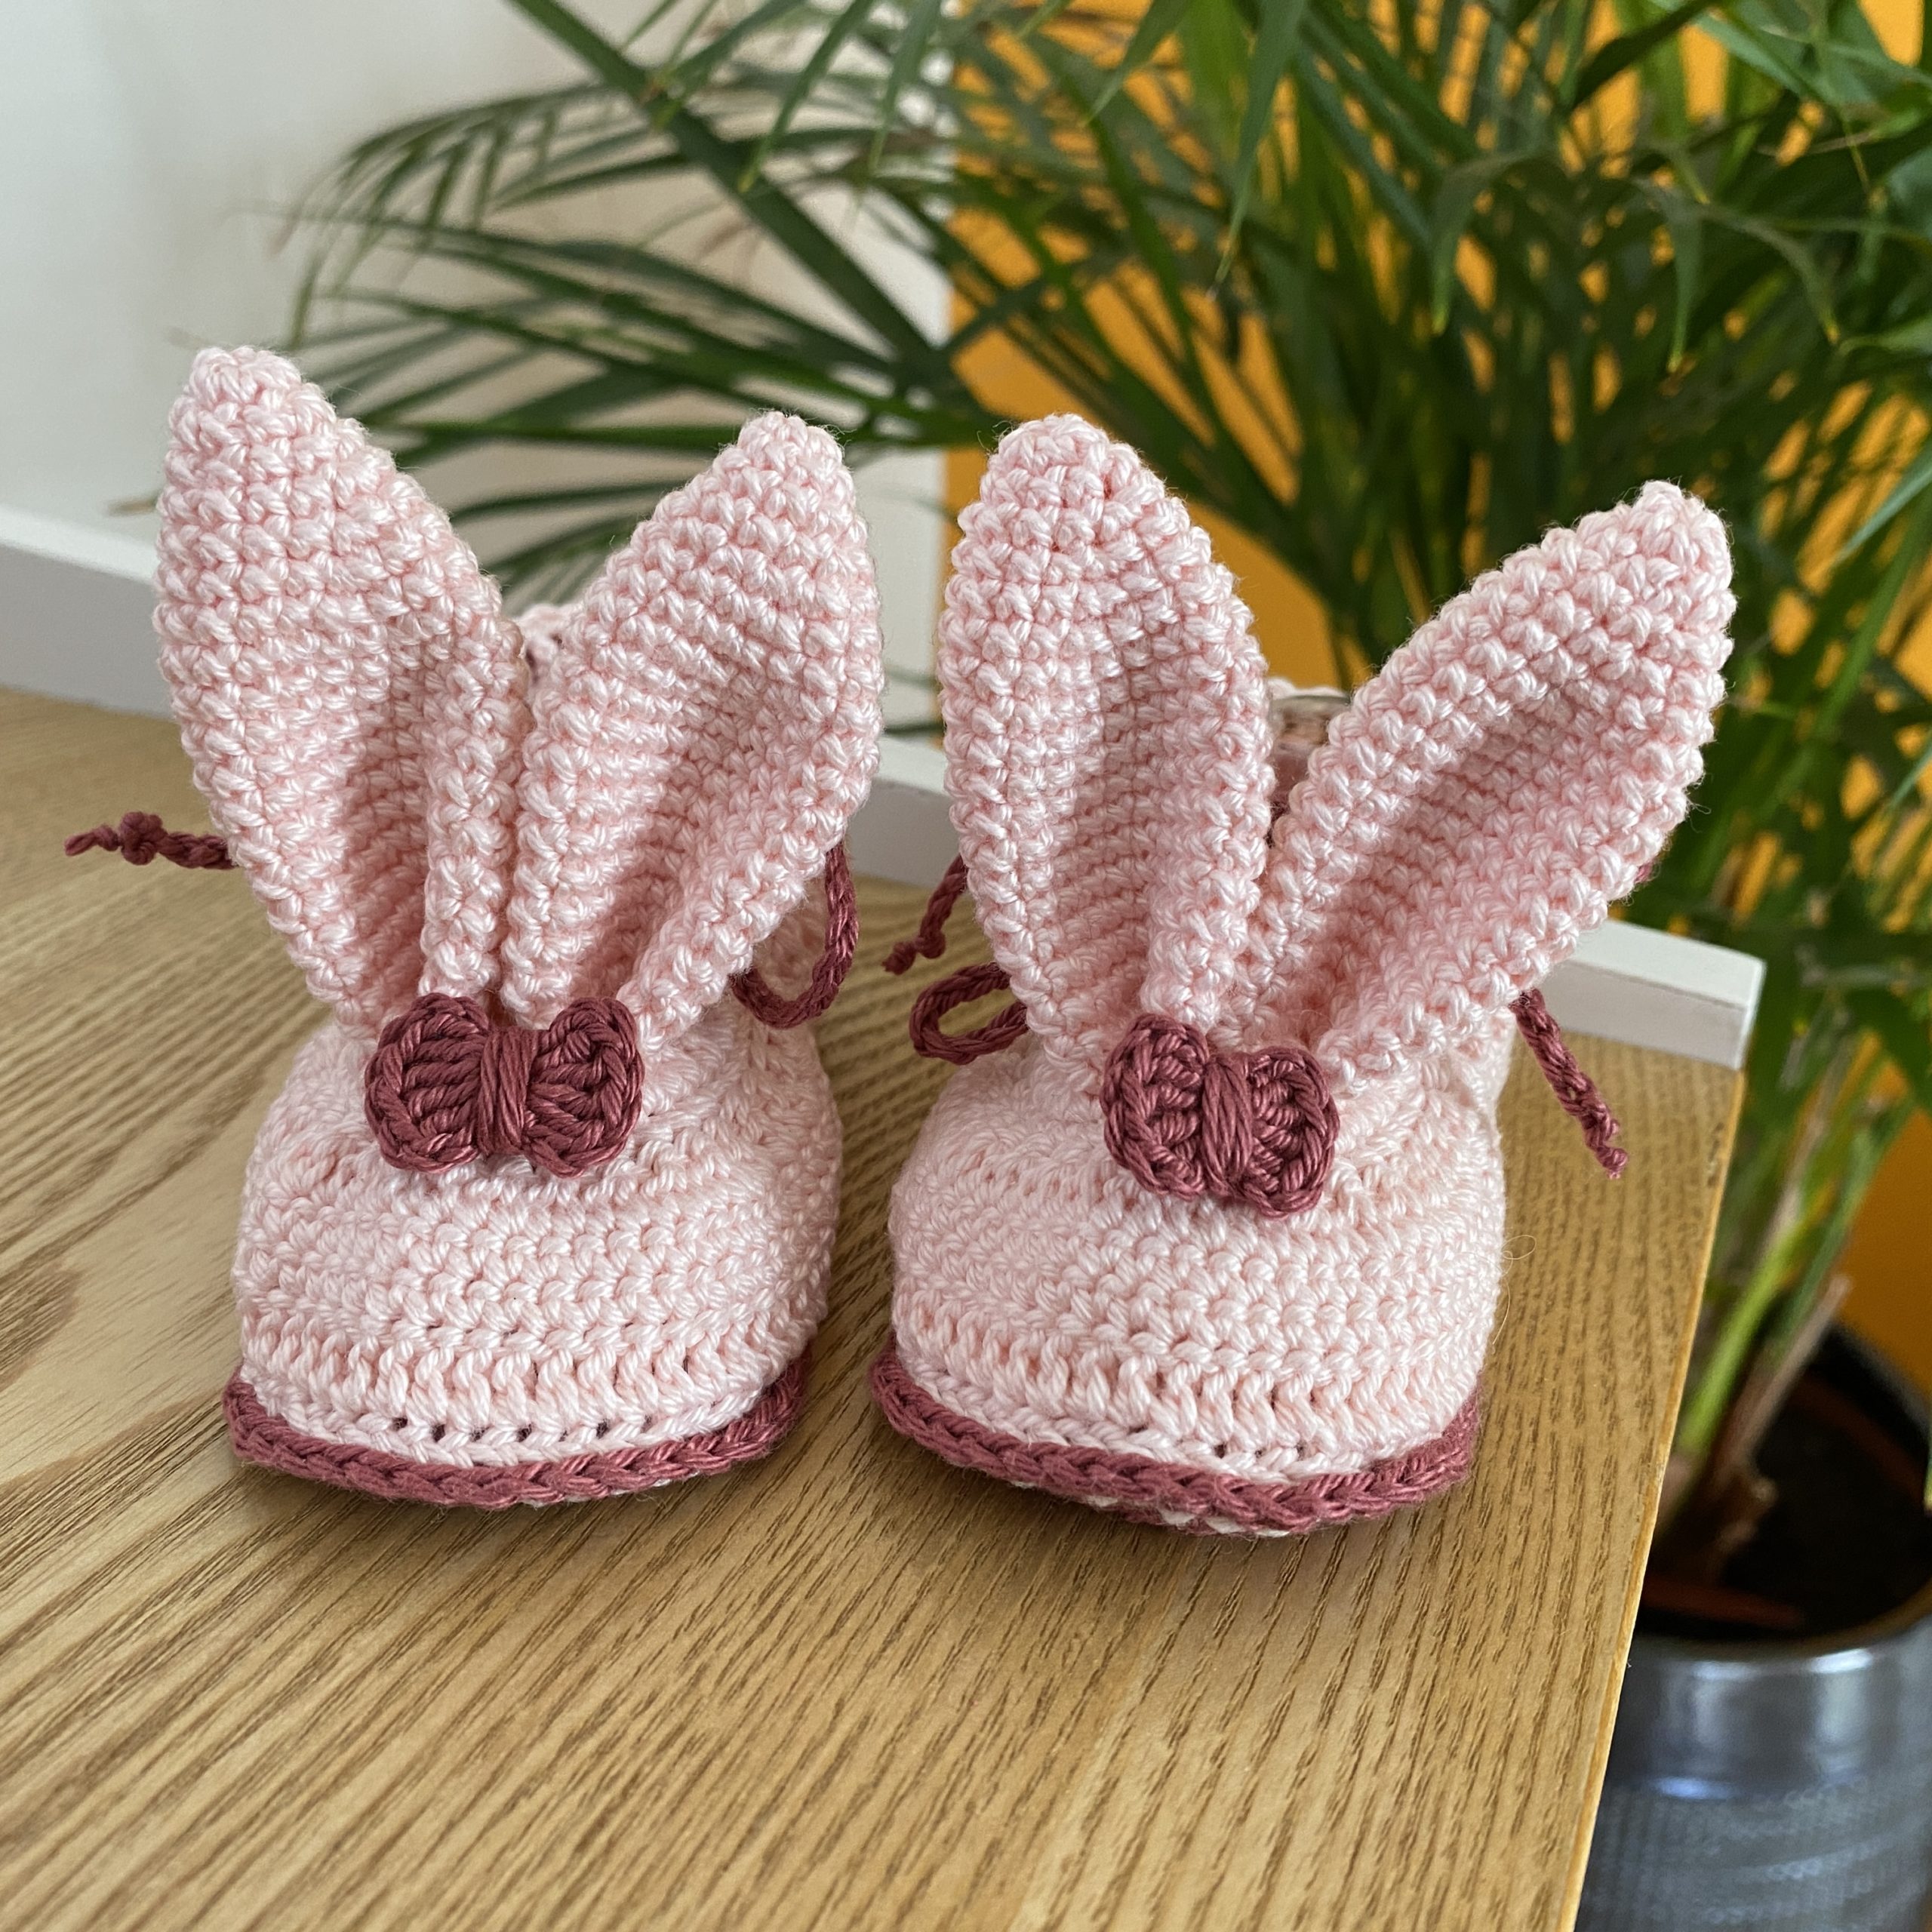 Chaussons pour bébé avec des oreilles de lapin